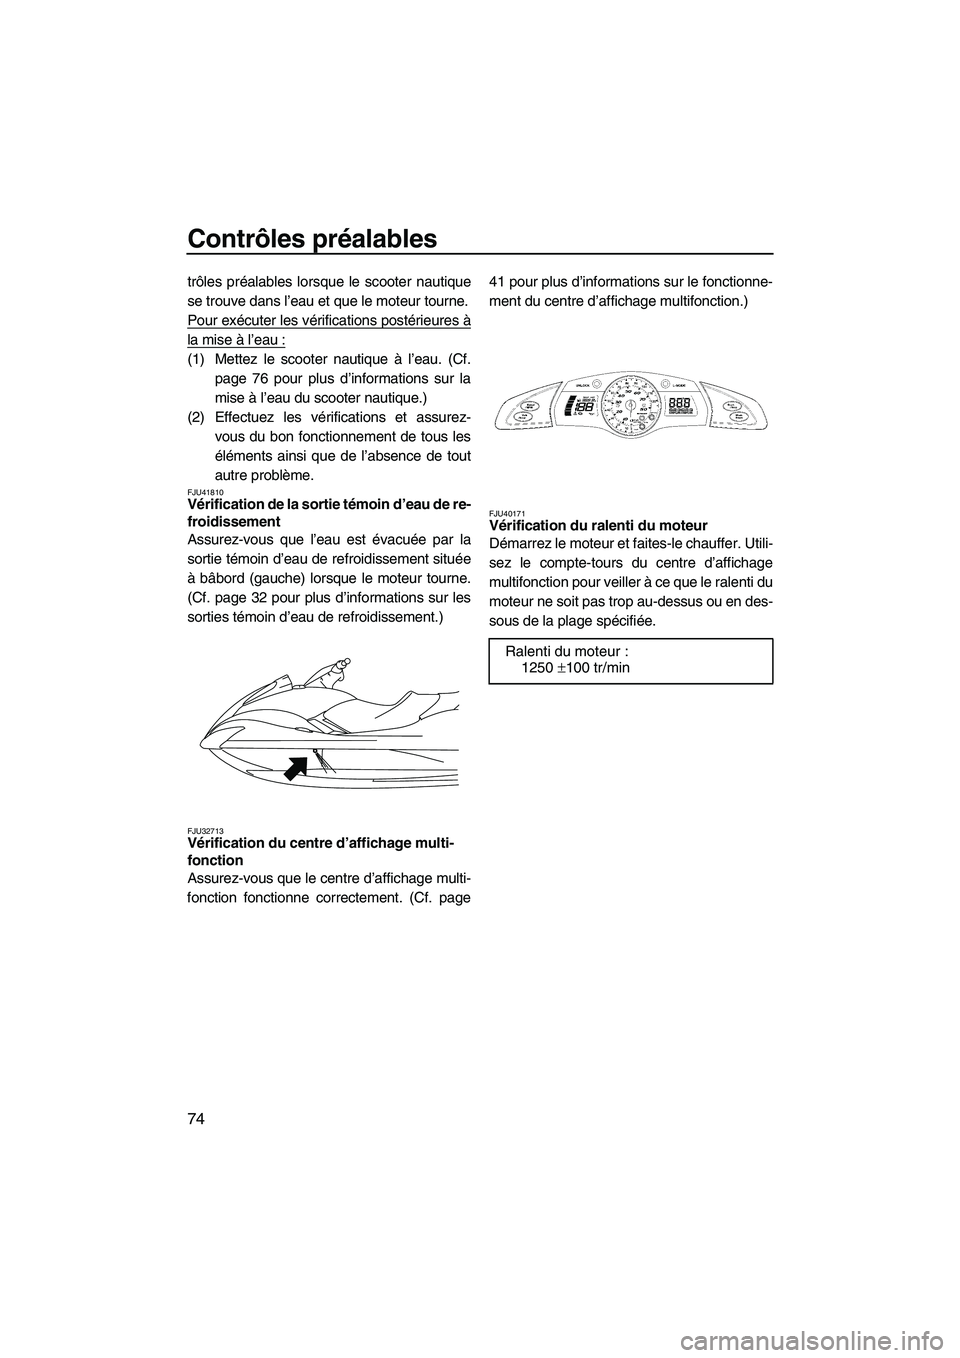 YAMAHA SVHO 2011  Notices Demploi (in French) Contrôles préalables
74
trôles préalables lorsque le scooter nautique
se trouve dans l’eau et que le moteur tourne.
Pour exécuter les vérifications postérieures à
la mise à l’eau :
(1) Me